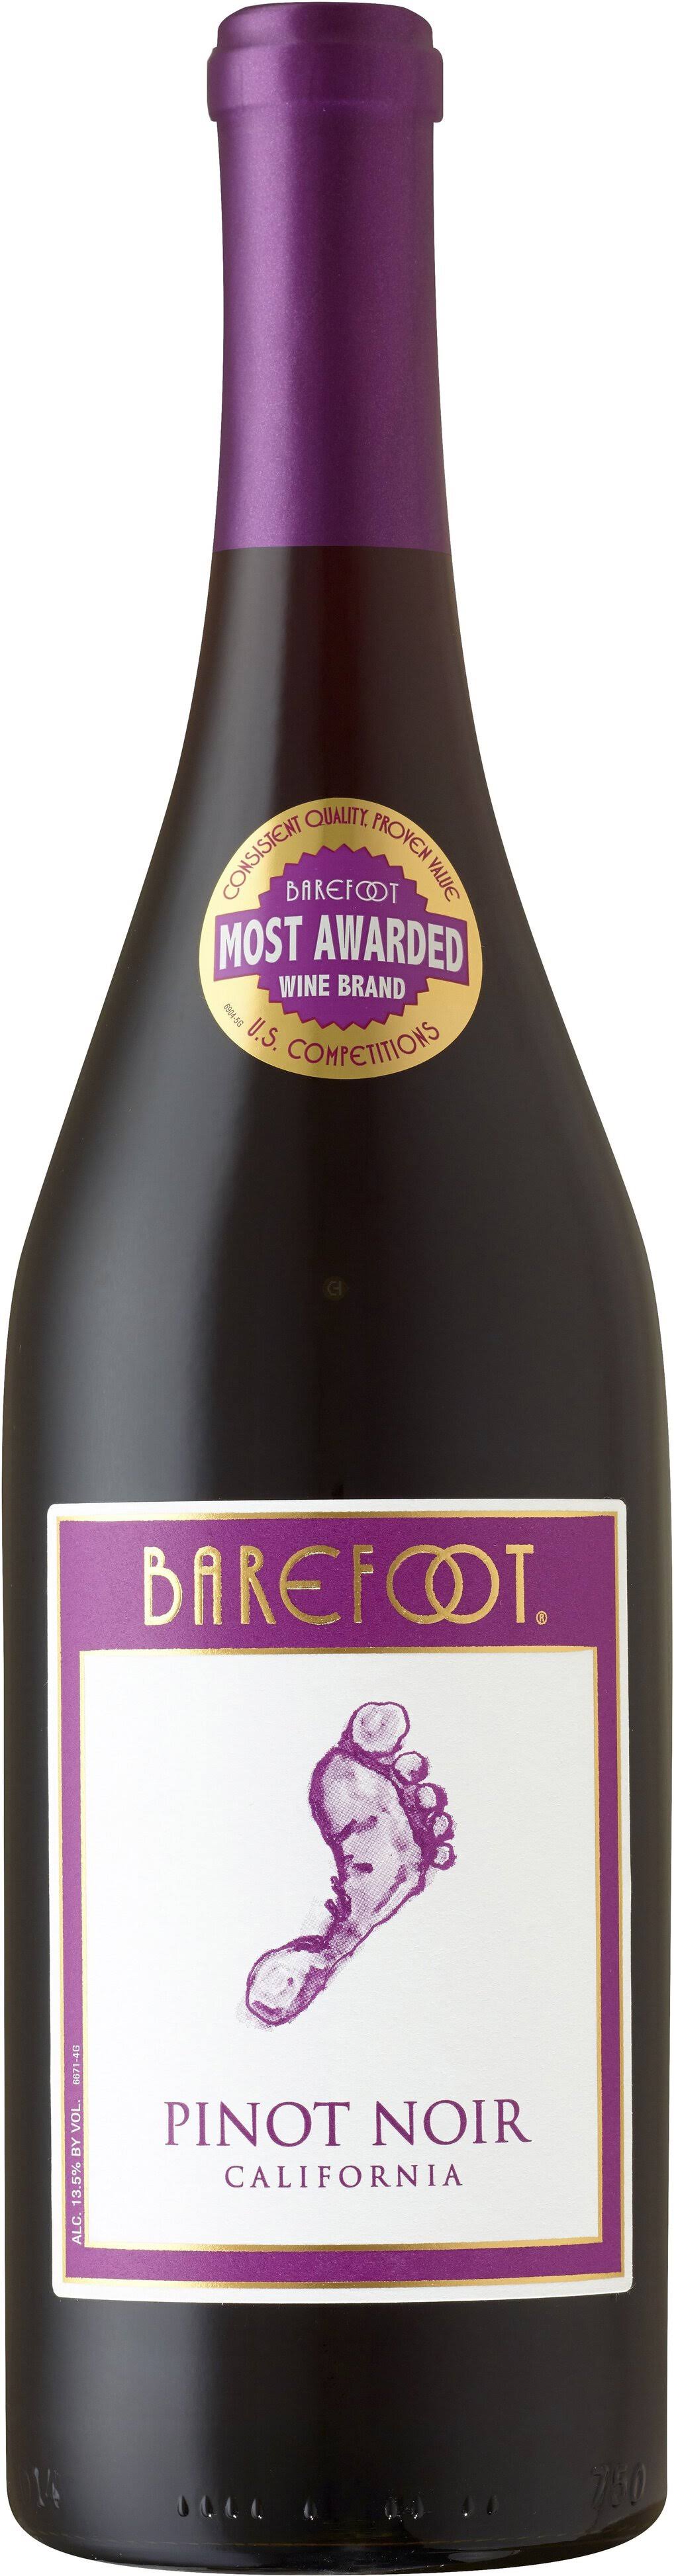 Gallo Barefoot Pinot Noir Wine - California